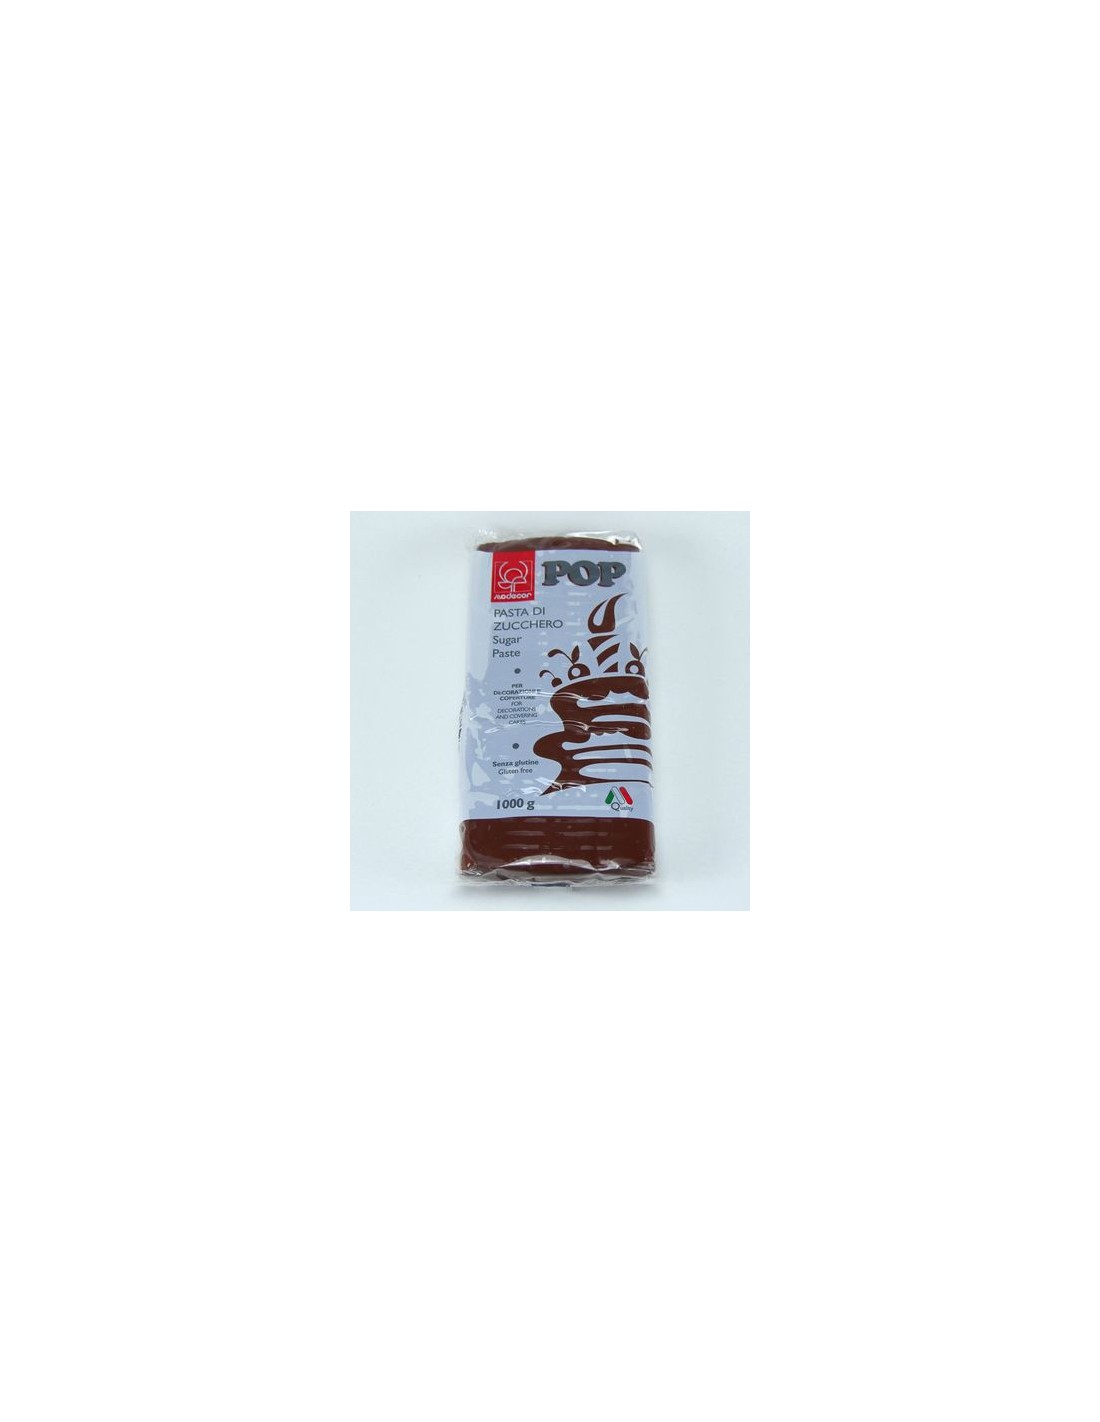 Pasta di Zucchero Pop : per coperture e decorazioni - Colore Marrone - 1 kg  - Senza Glutine e Senza